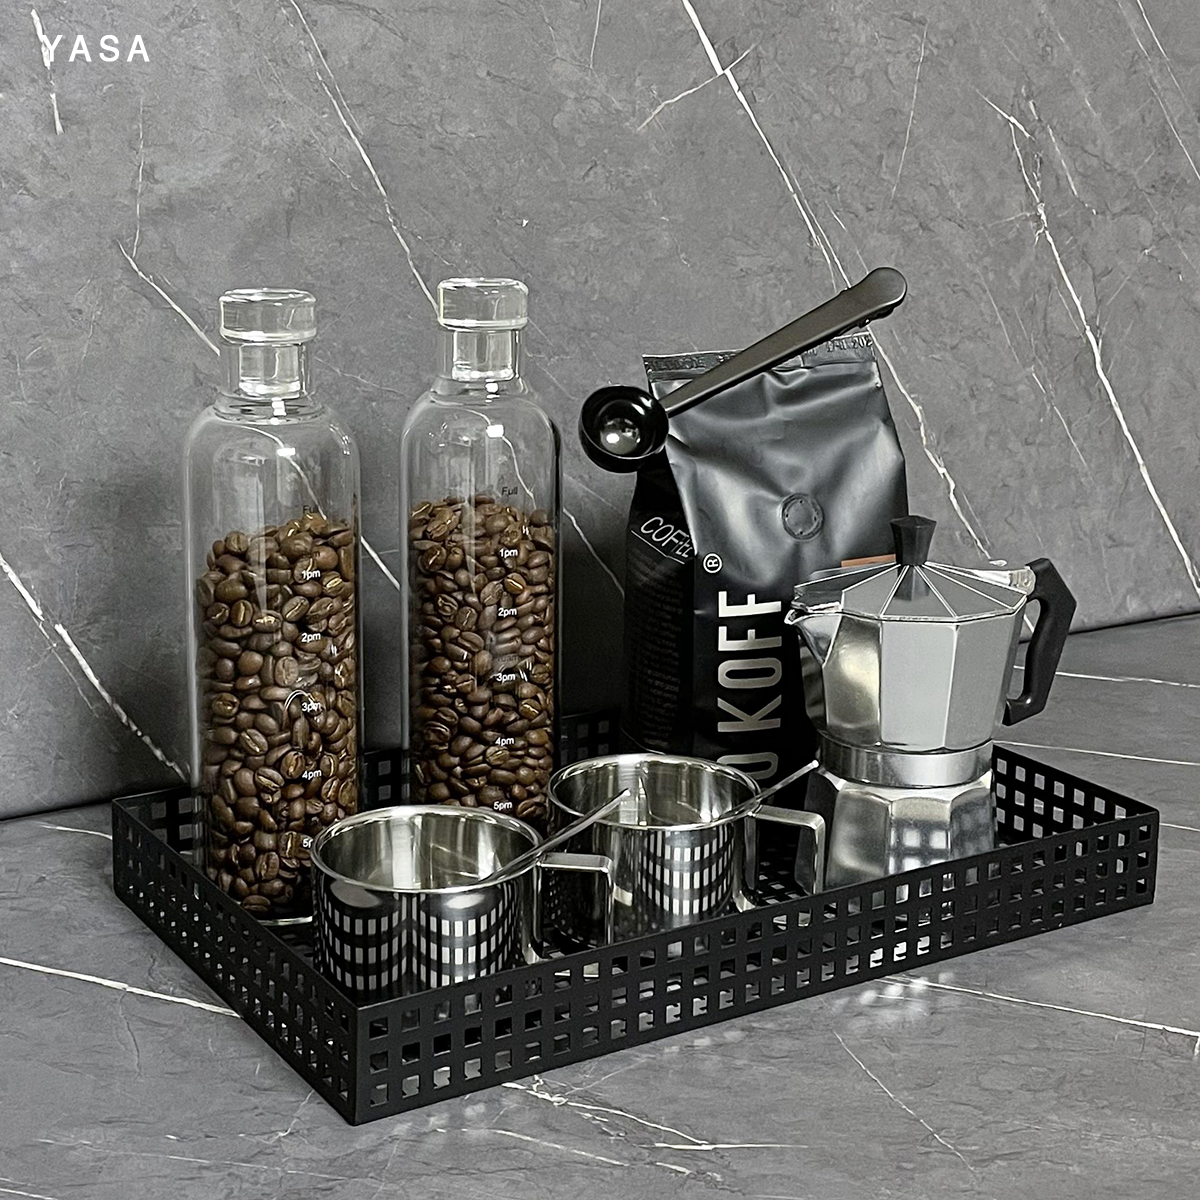 YASA【咖啡器具组合】样板房意式厨房厨柜台面软装黑色道具套装 家居饰品 装饰摆件 原图主图